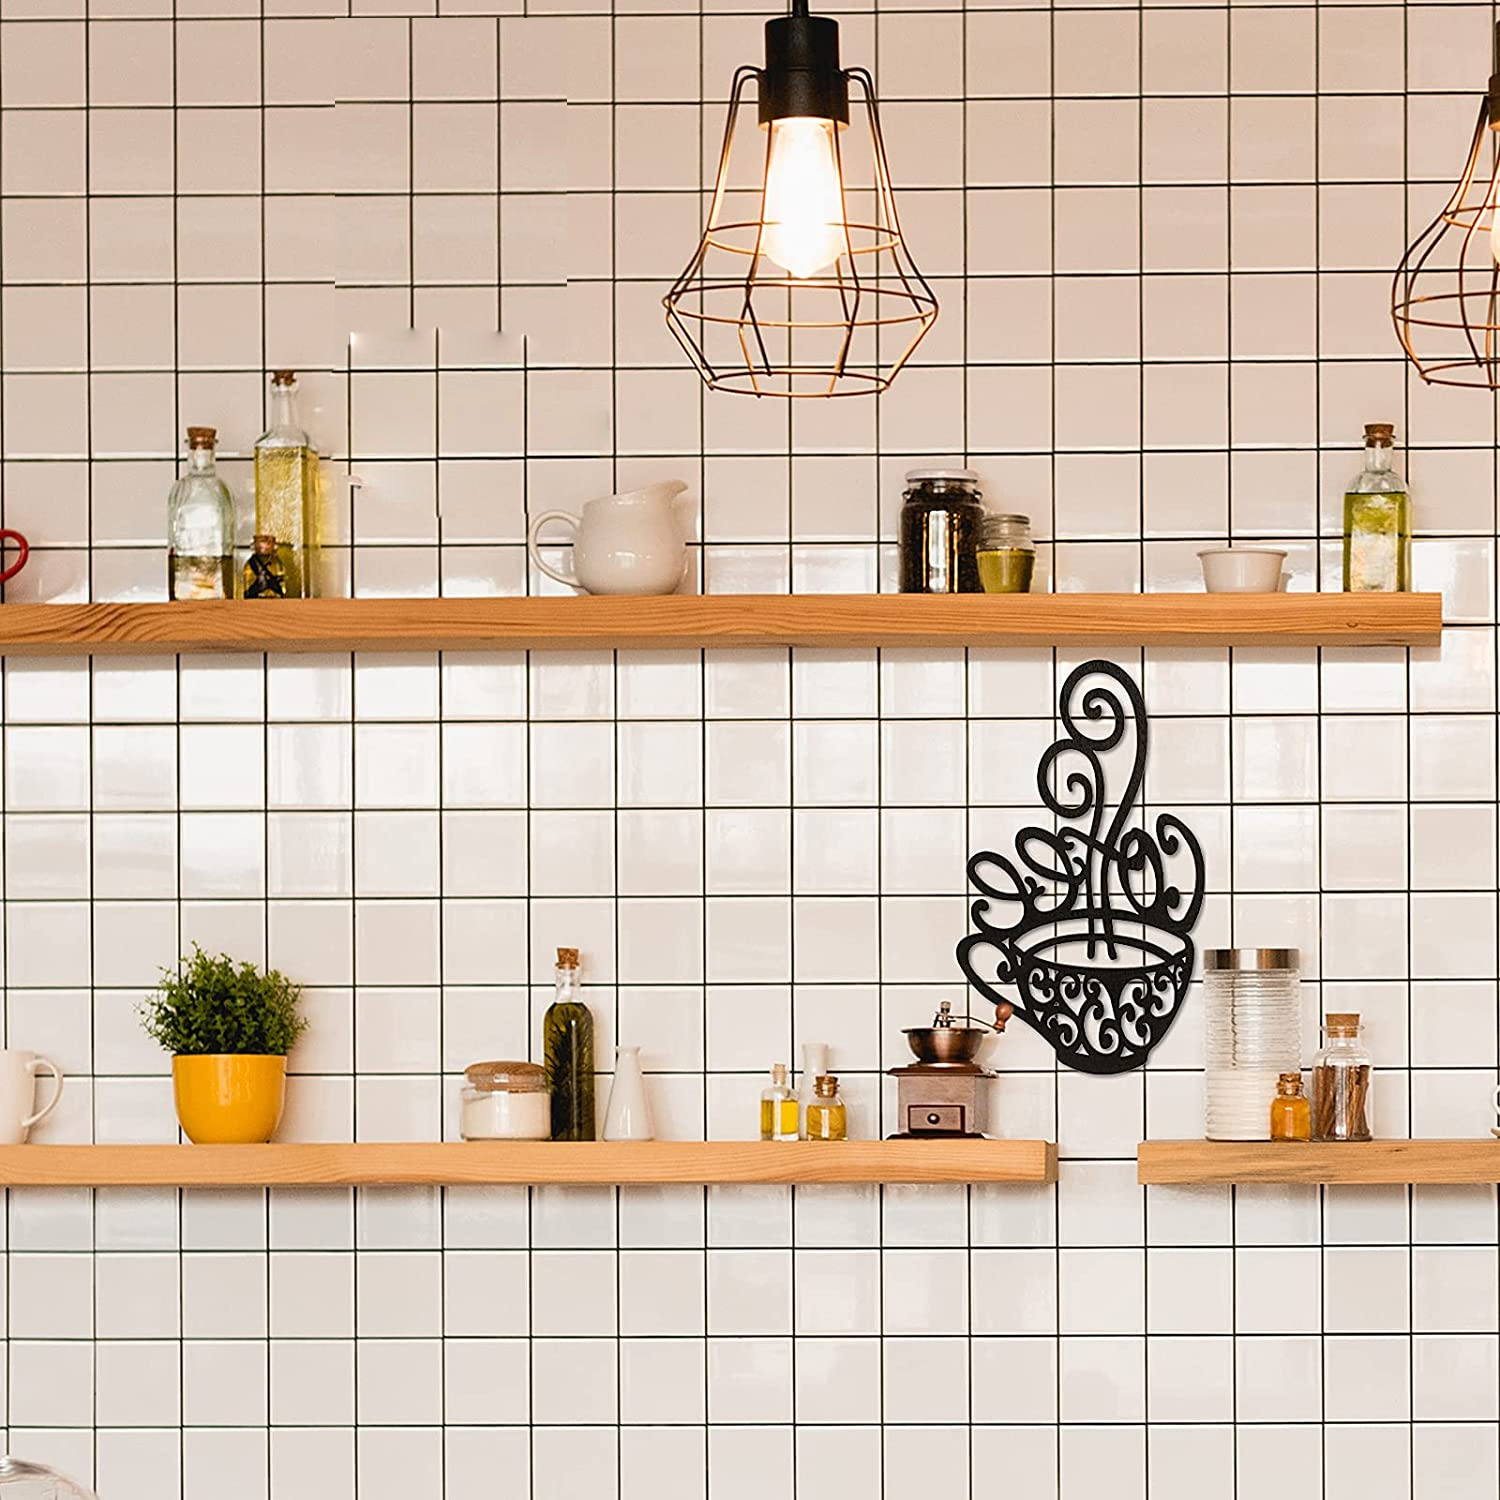 Coffee Bar Sign-kitchen Decor-art-kitchen Coffee Station